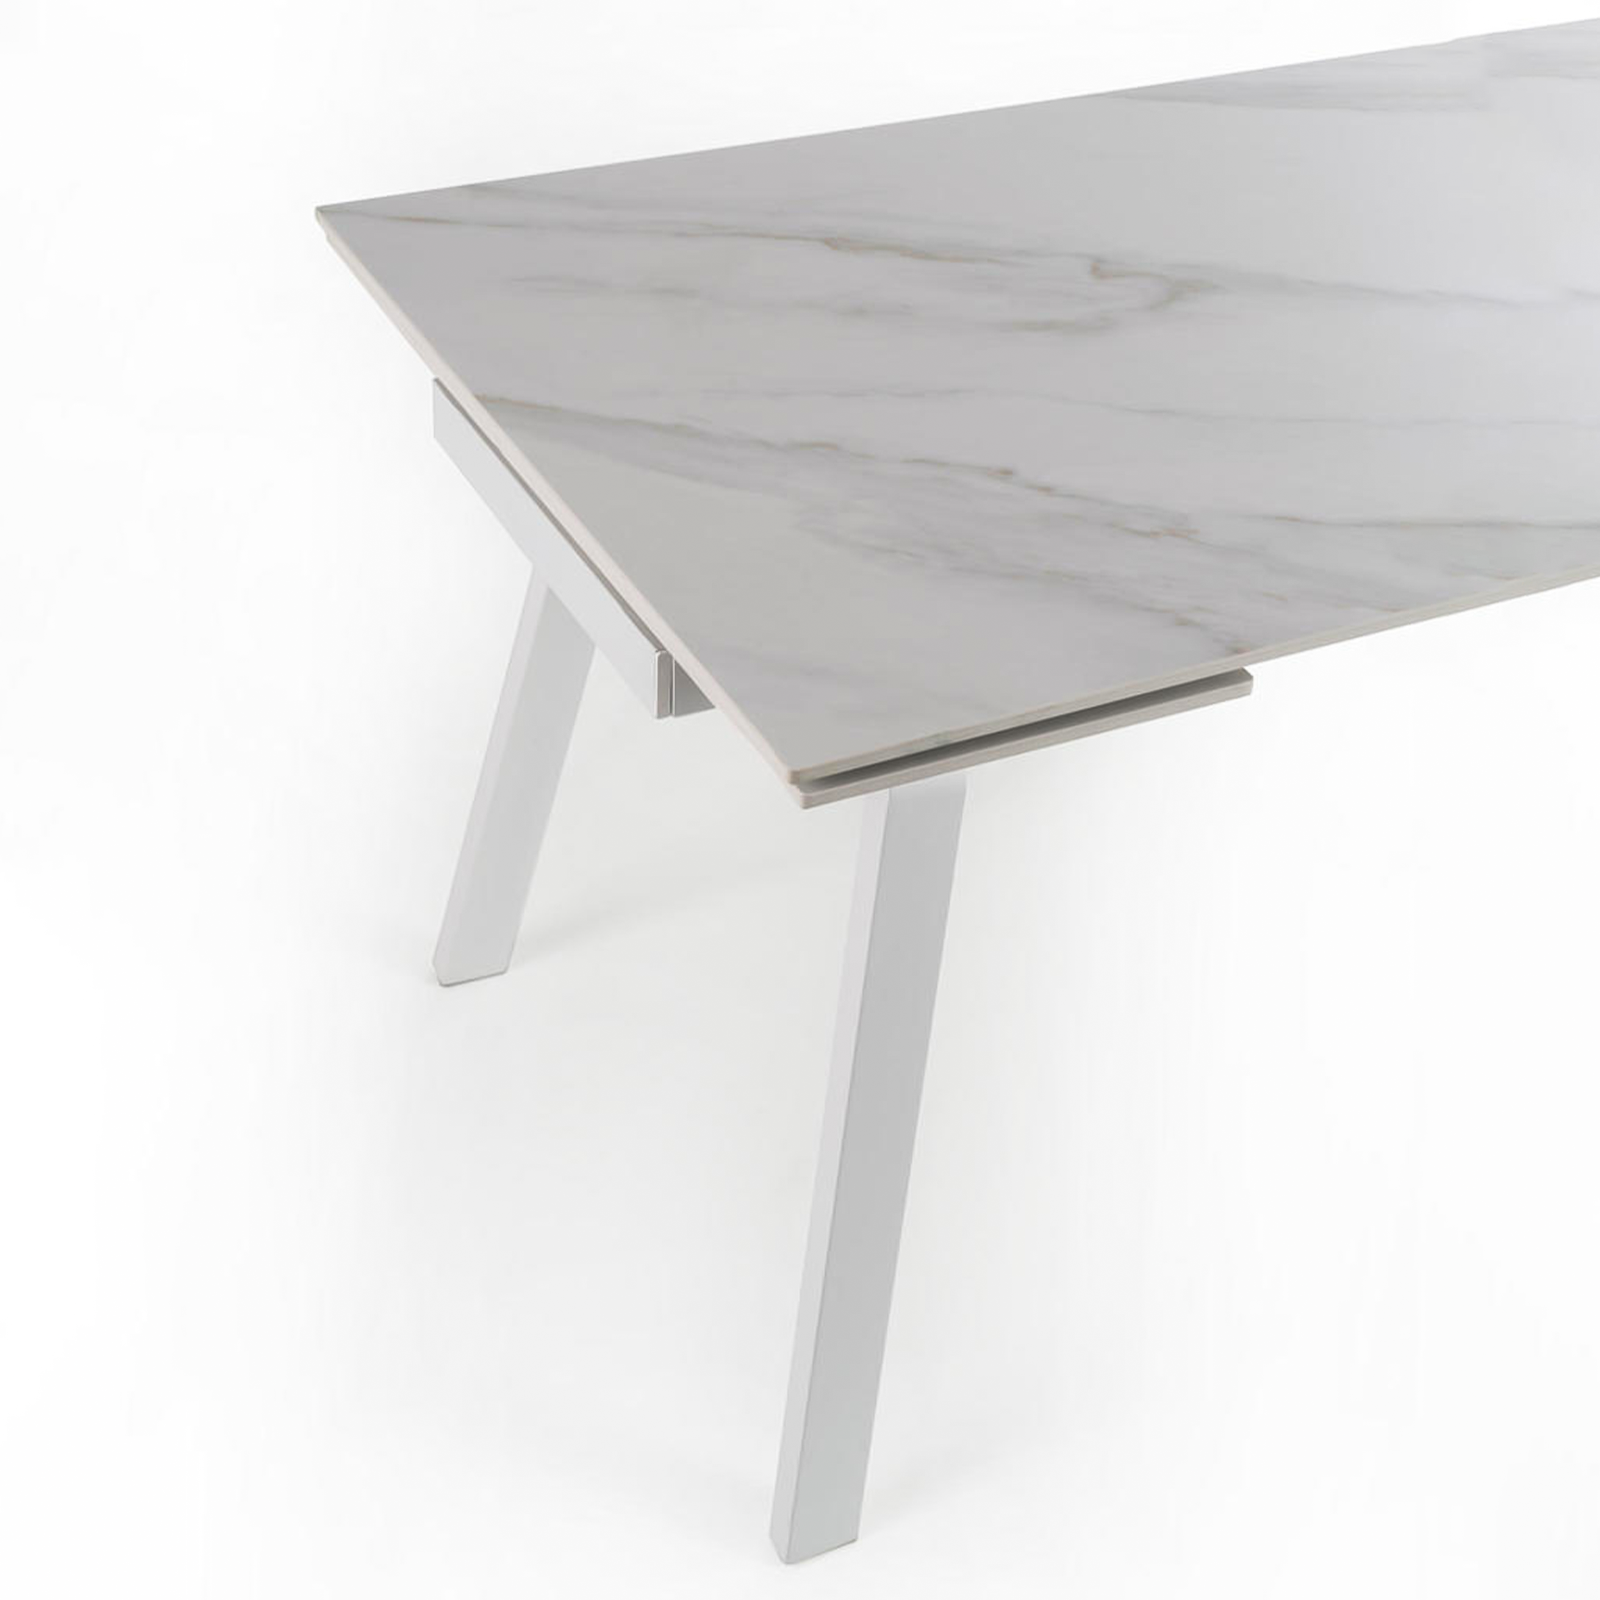 Tavolo allungabile 140-200x80 cm con top effetto marmo grigio